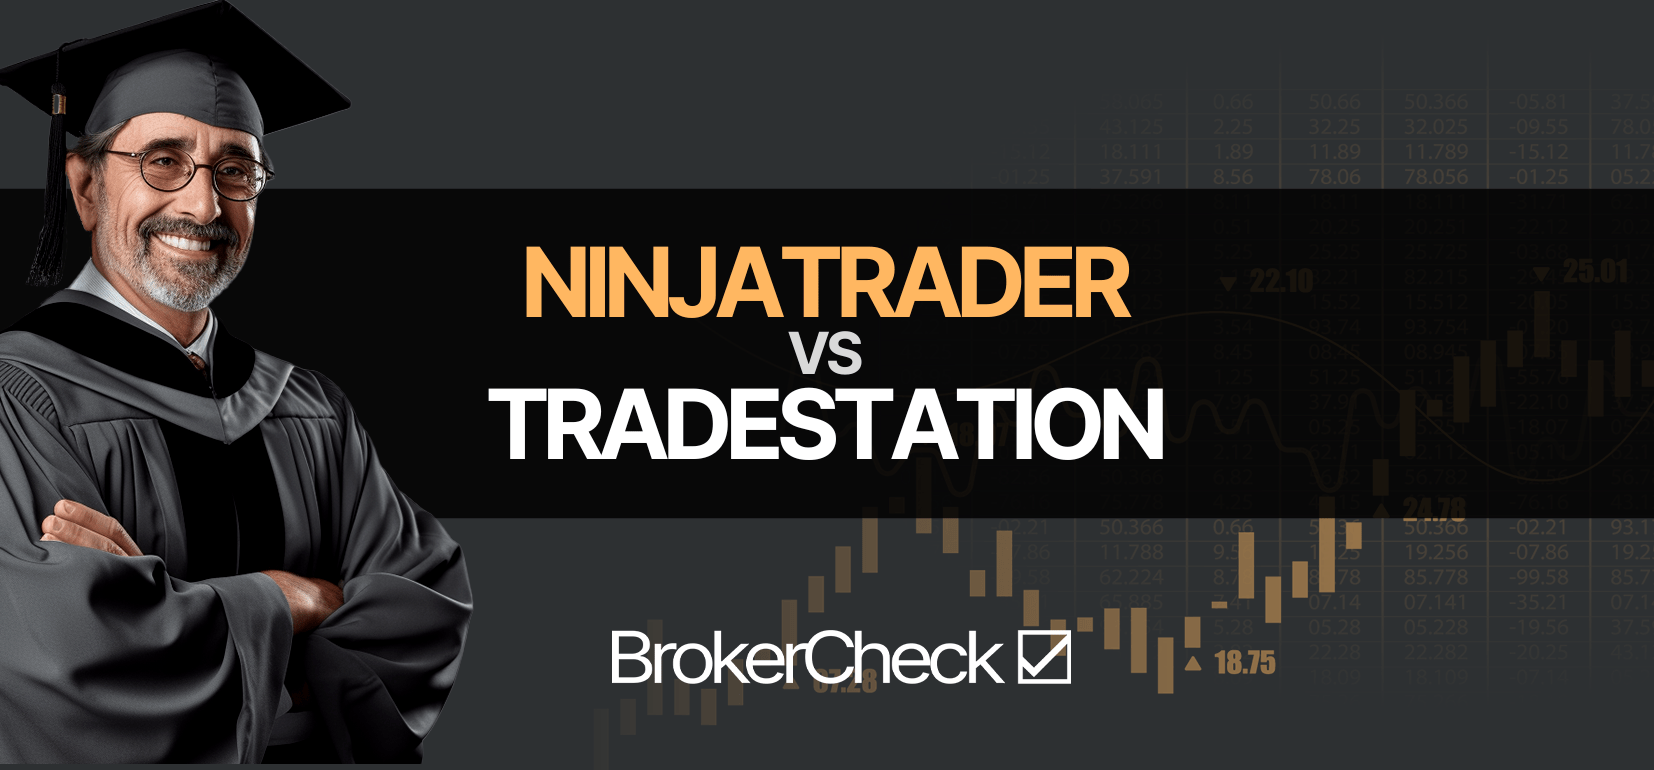 NinjaTrader vs Tradetrạm